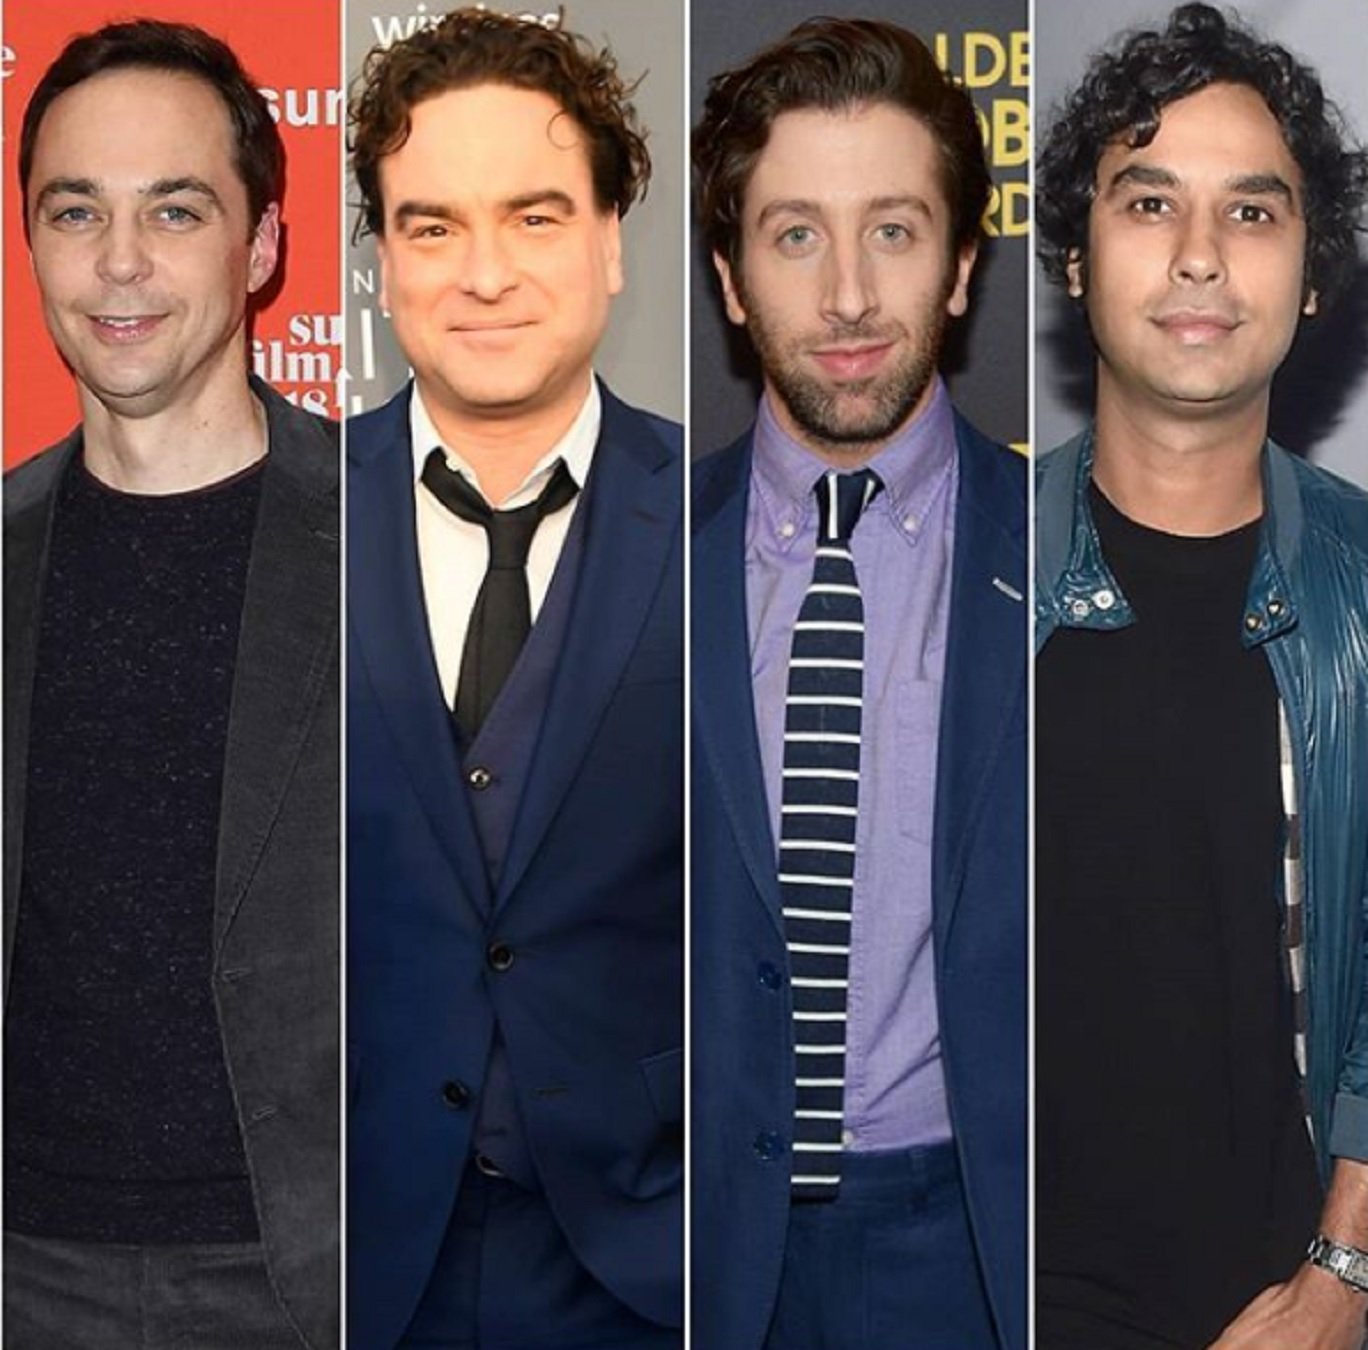 Un actor feo de 'The Big Bang Theory' ya no es así: ahora es un tío bueno